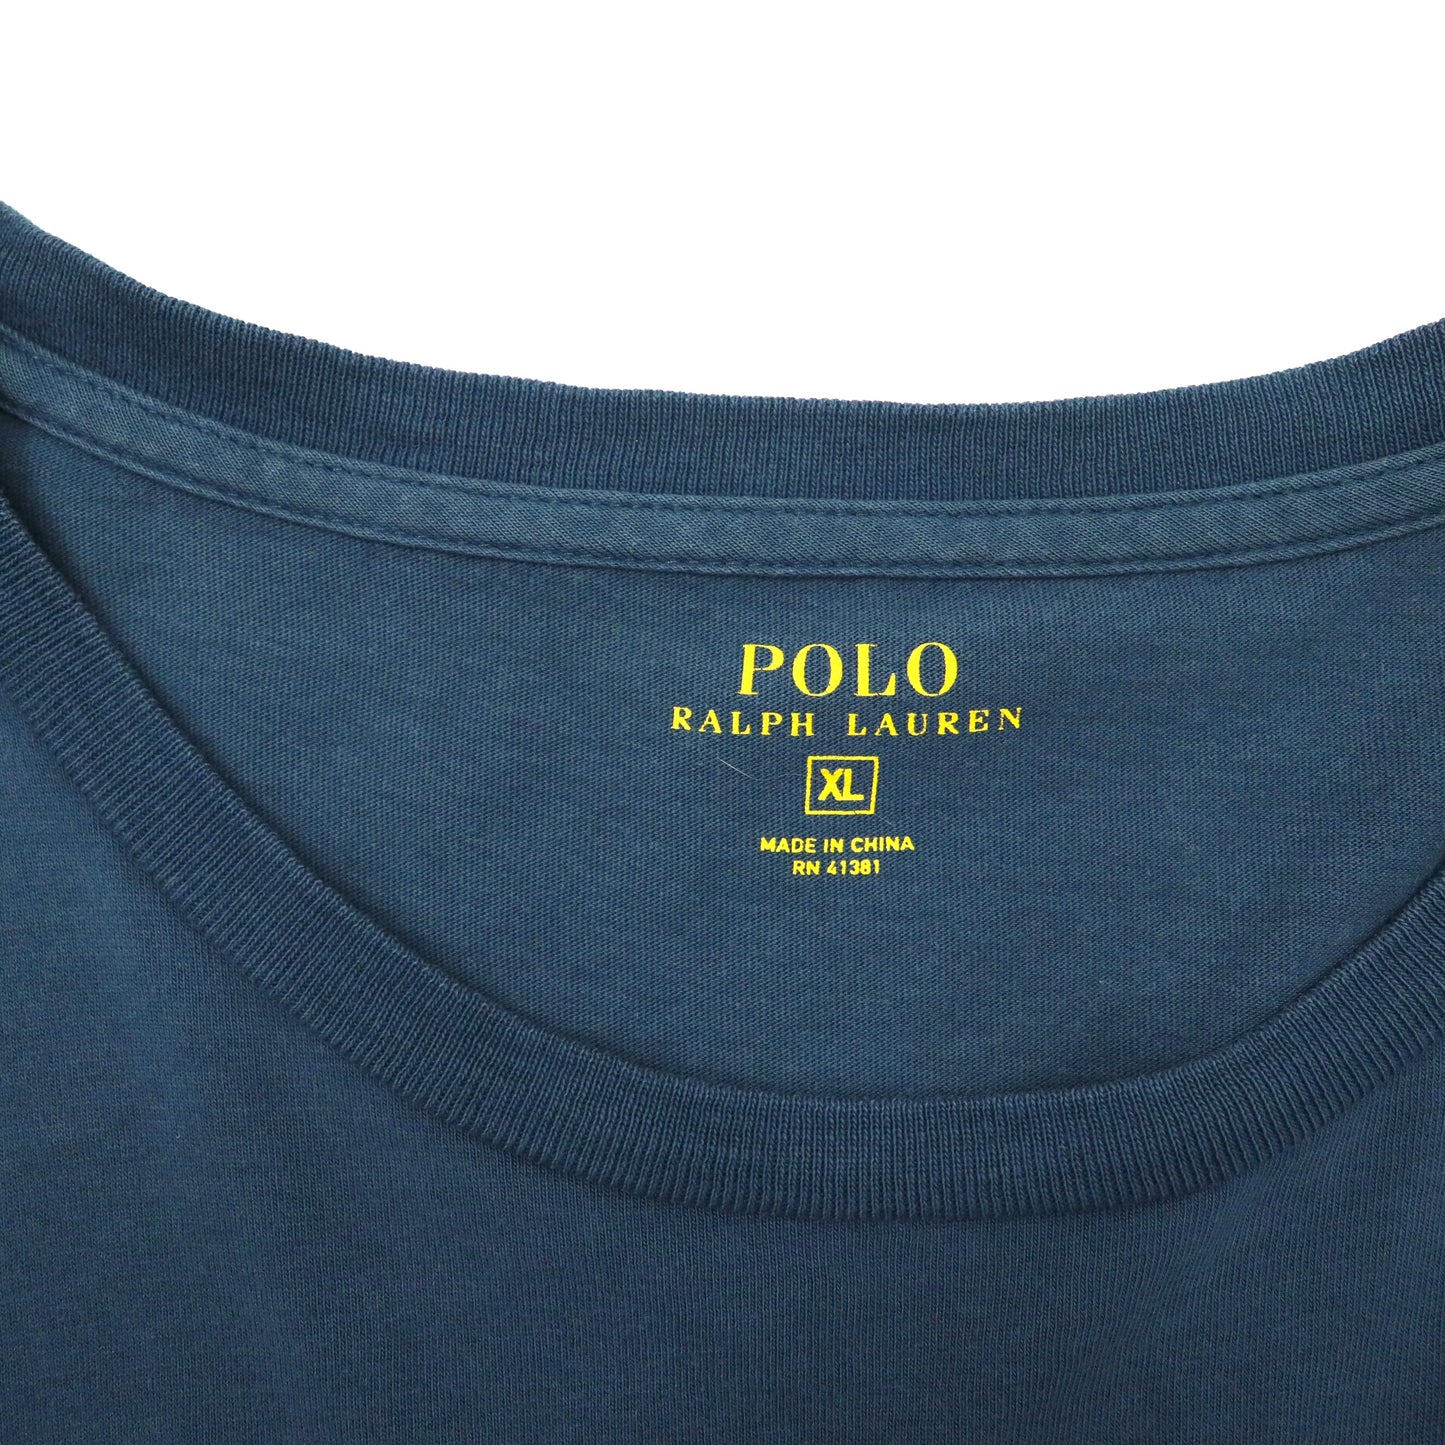 POLO RALPH LAUREN ビッグサイズ ポケットTシャツ XL ネイビー コットン スモールポニー刺繍